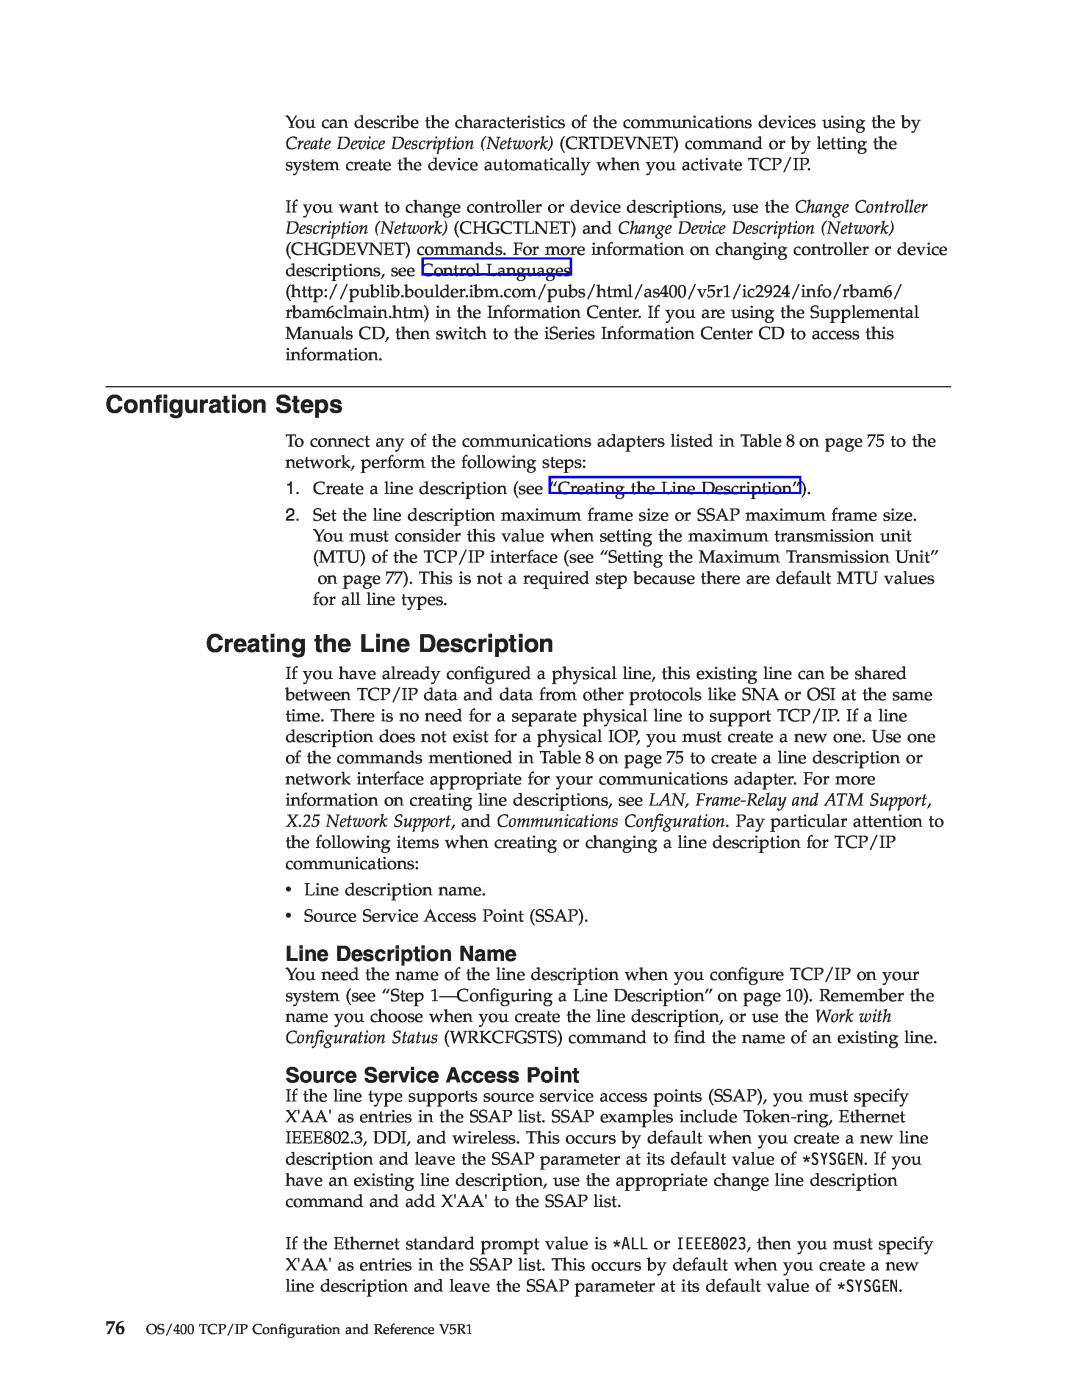 IBM SC41-5420-04 Configuration Steps, Creating the Line Description, Line Description Name, Source Service Access Point 